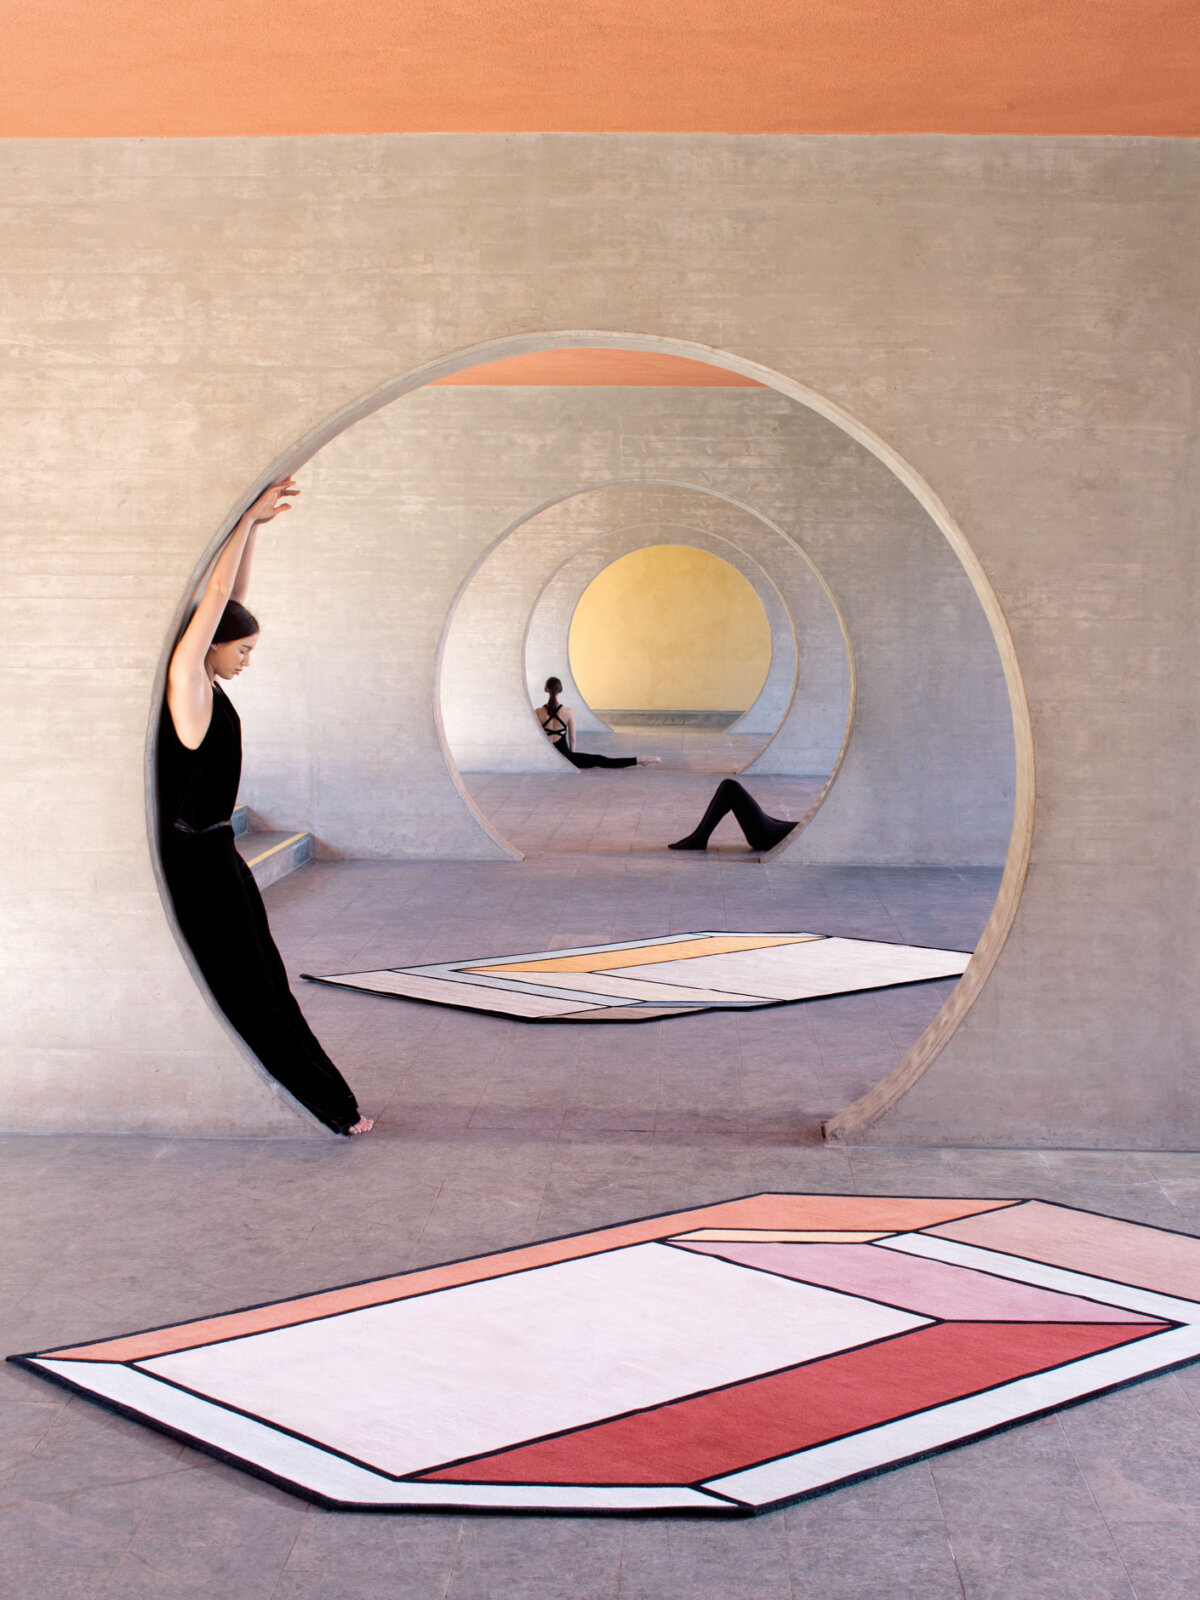 Visioni rug designed by Patricia Urquiola